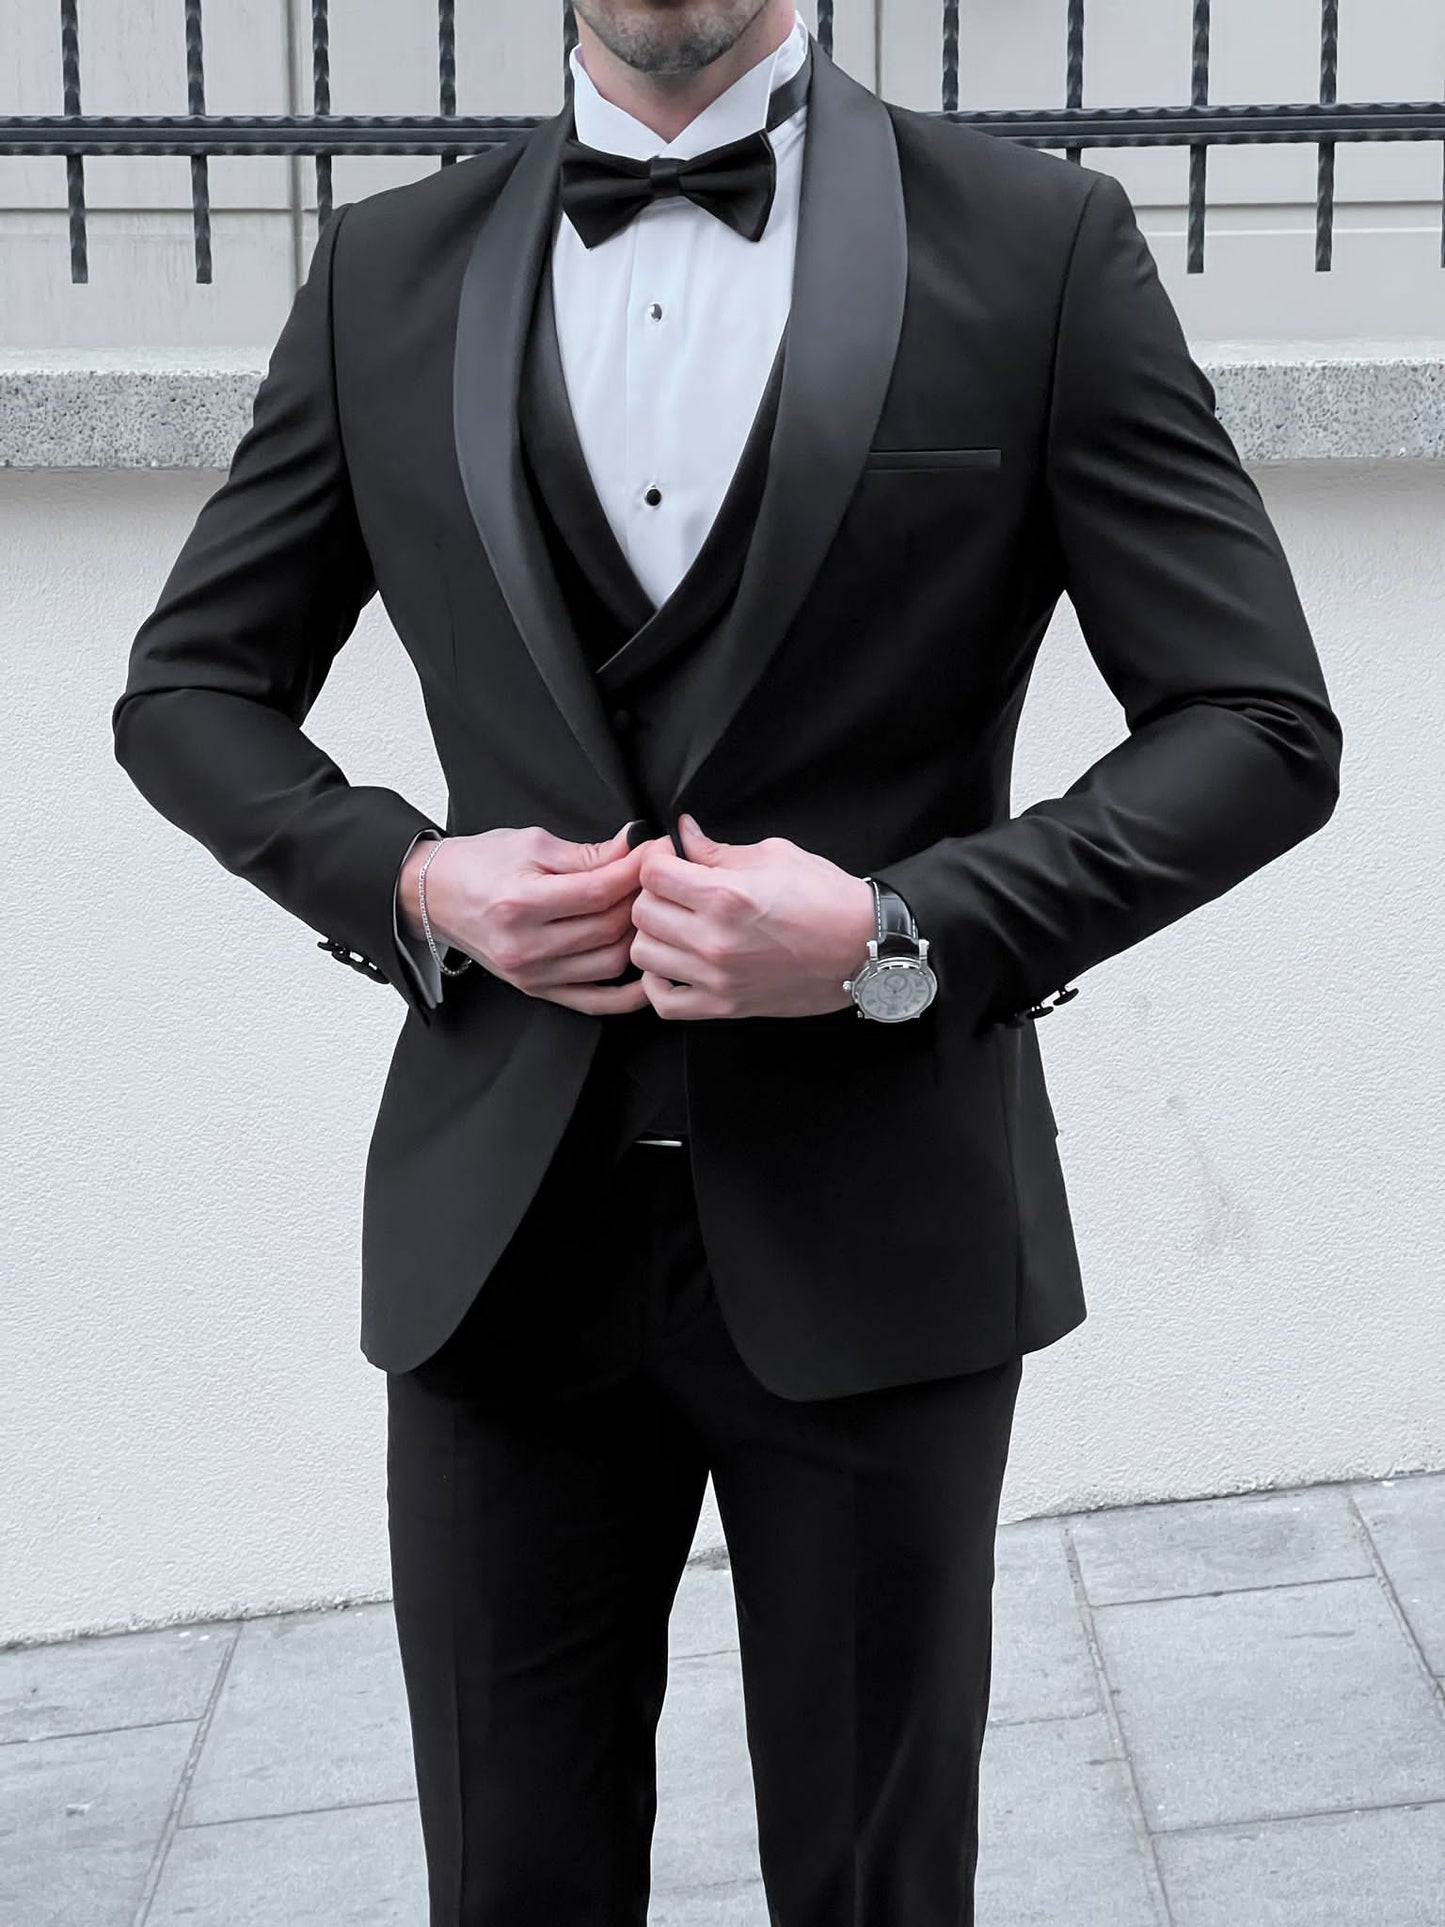 HolloMen Shawl Collar Black Tuxedo